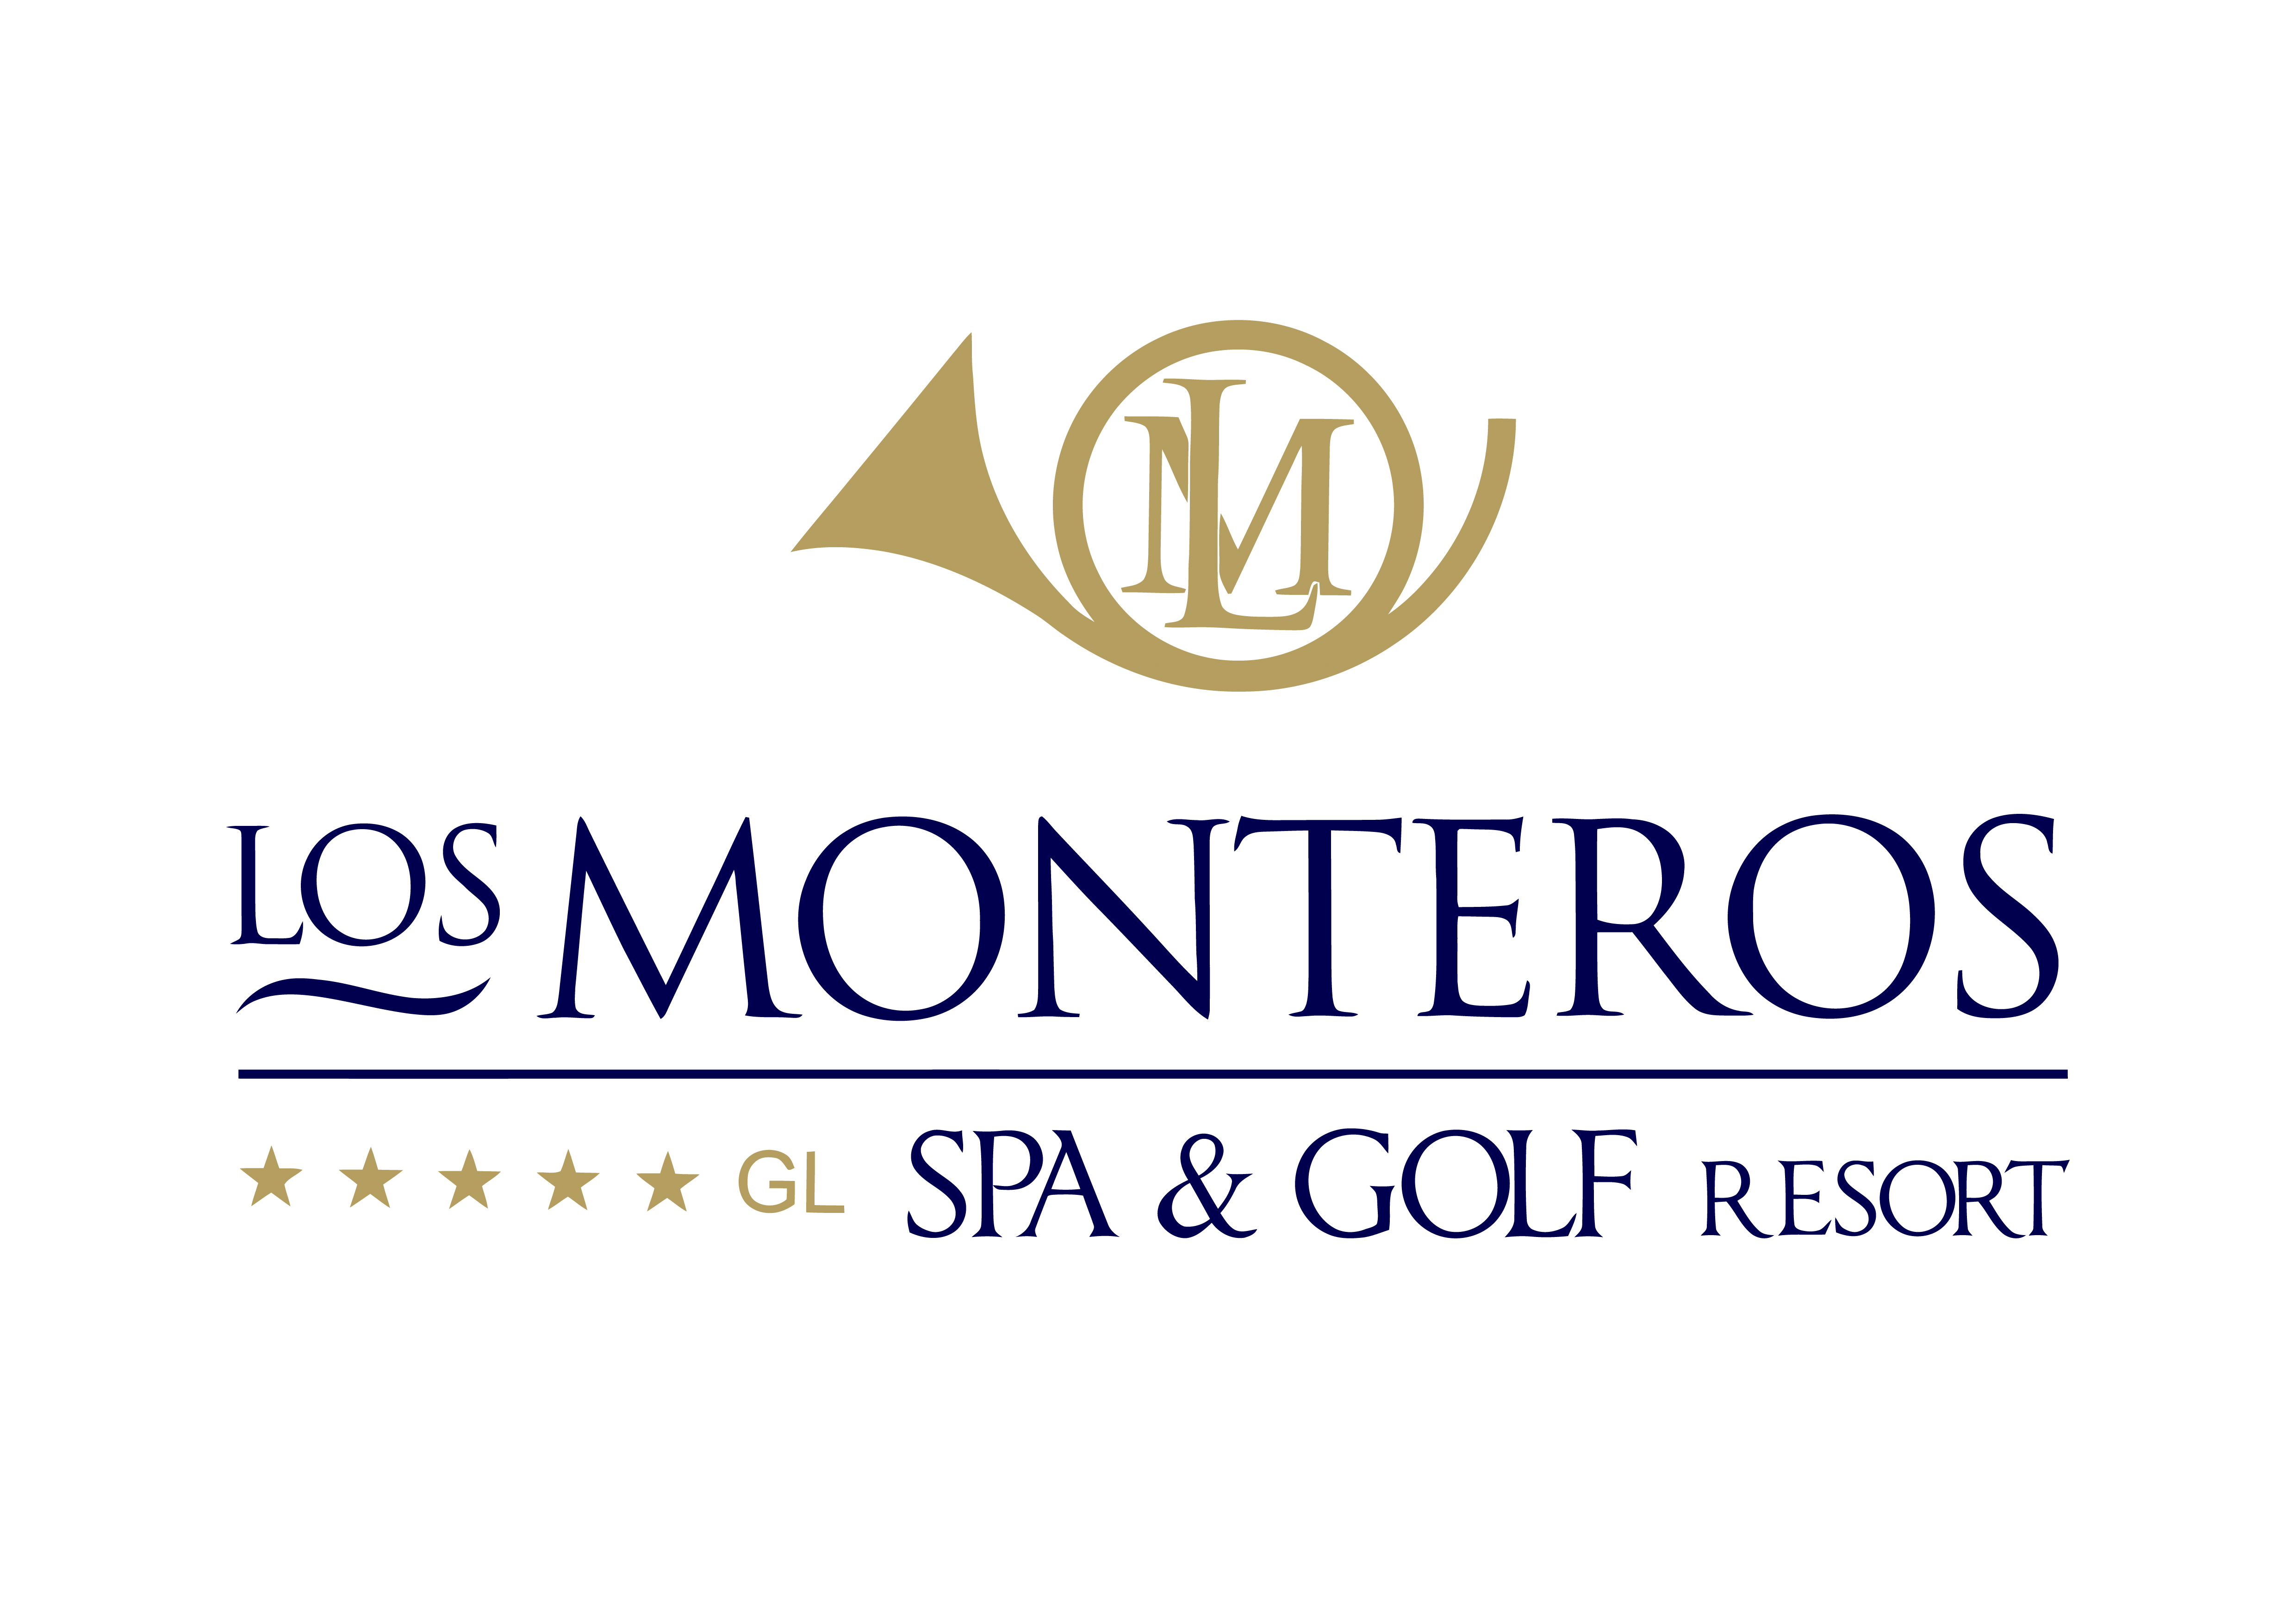 Los Monteros Racket Club